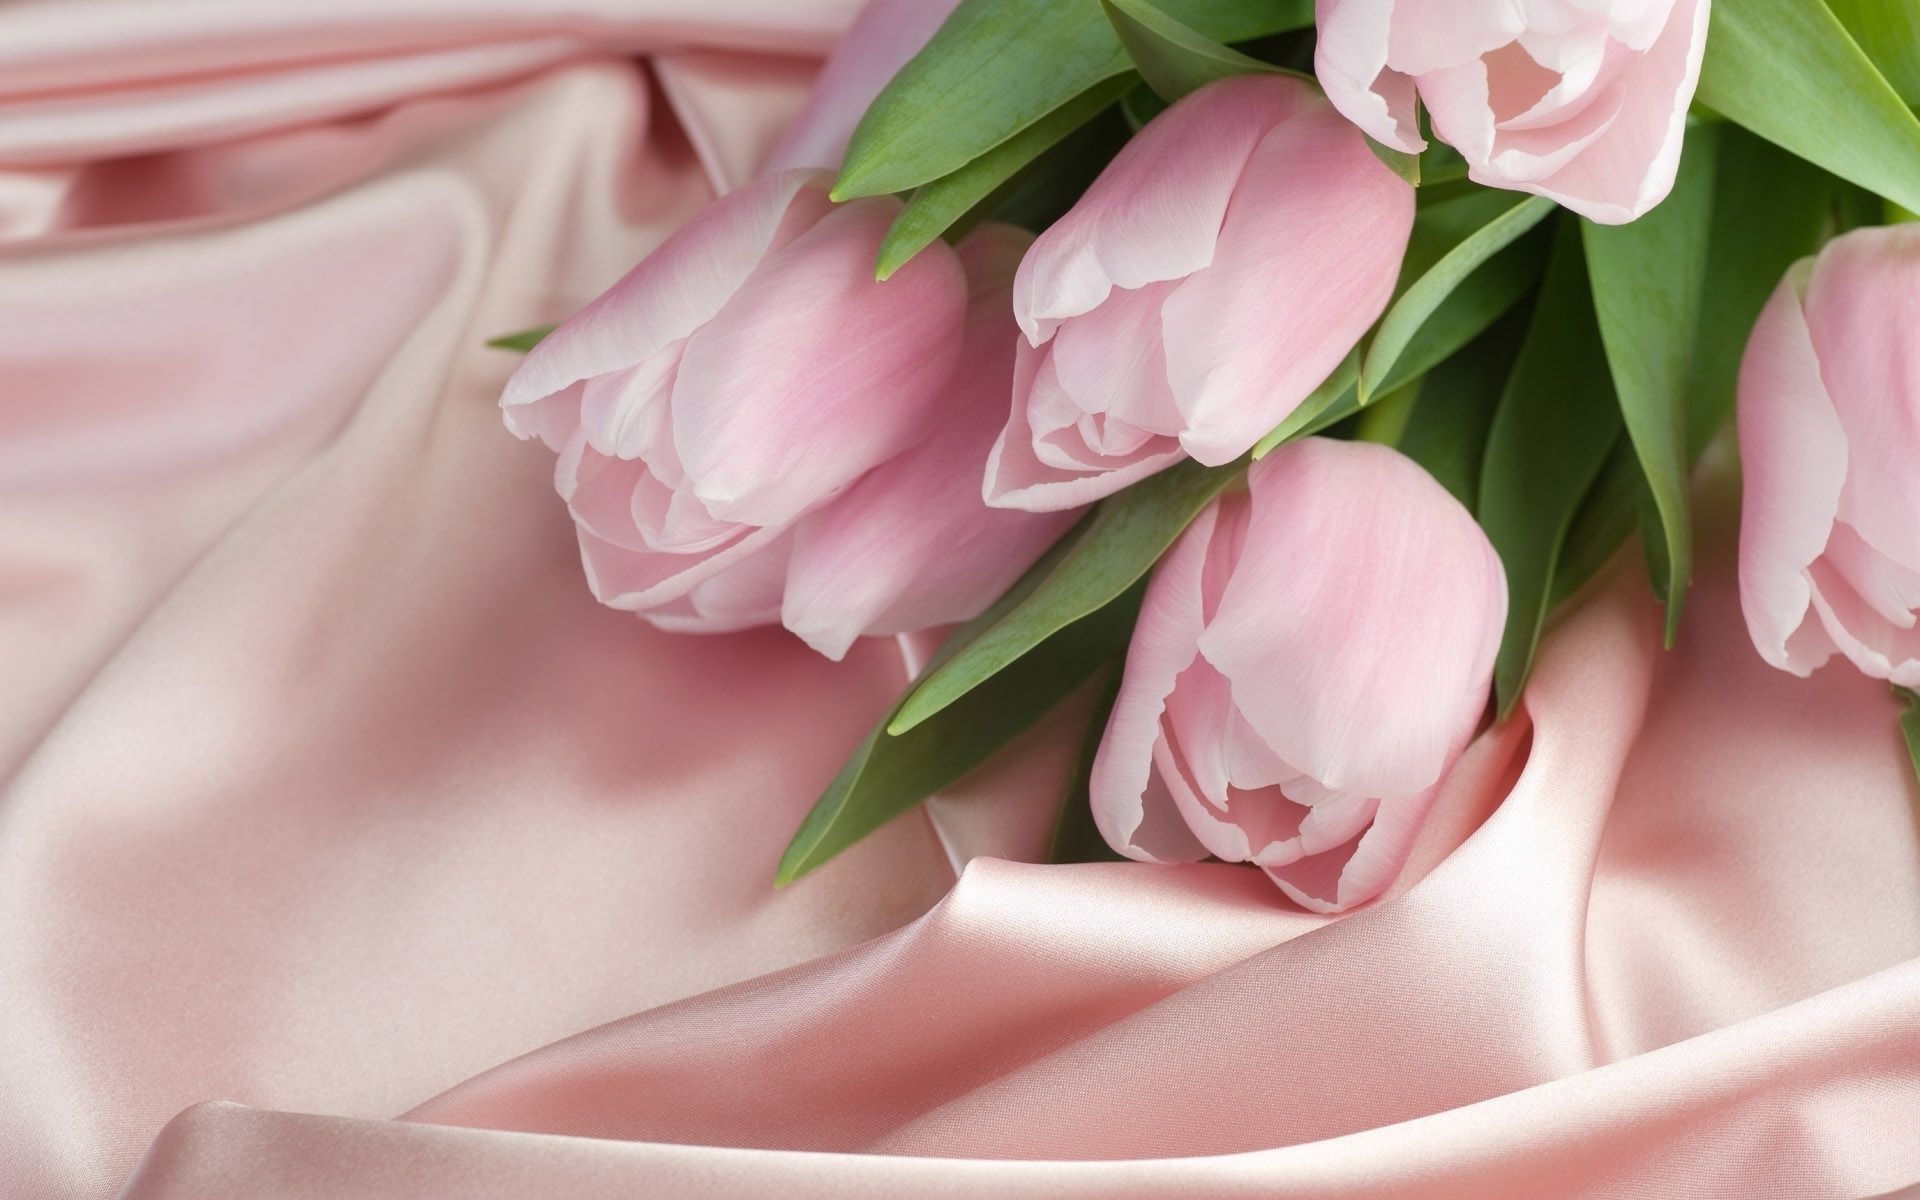 тюльпаны цветок свадьба любовь цветочные букет романтика романтический роза флора природа лист красивые подарок для новобрачных лепесток блюминг невеста пастель тюльпан брак